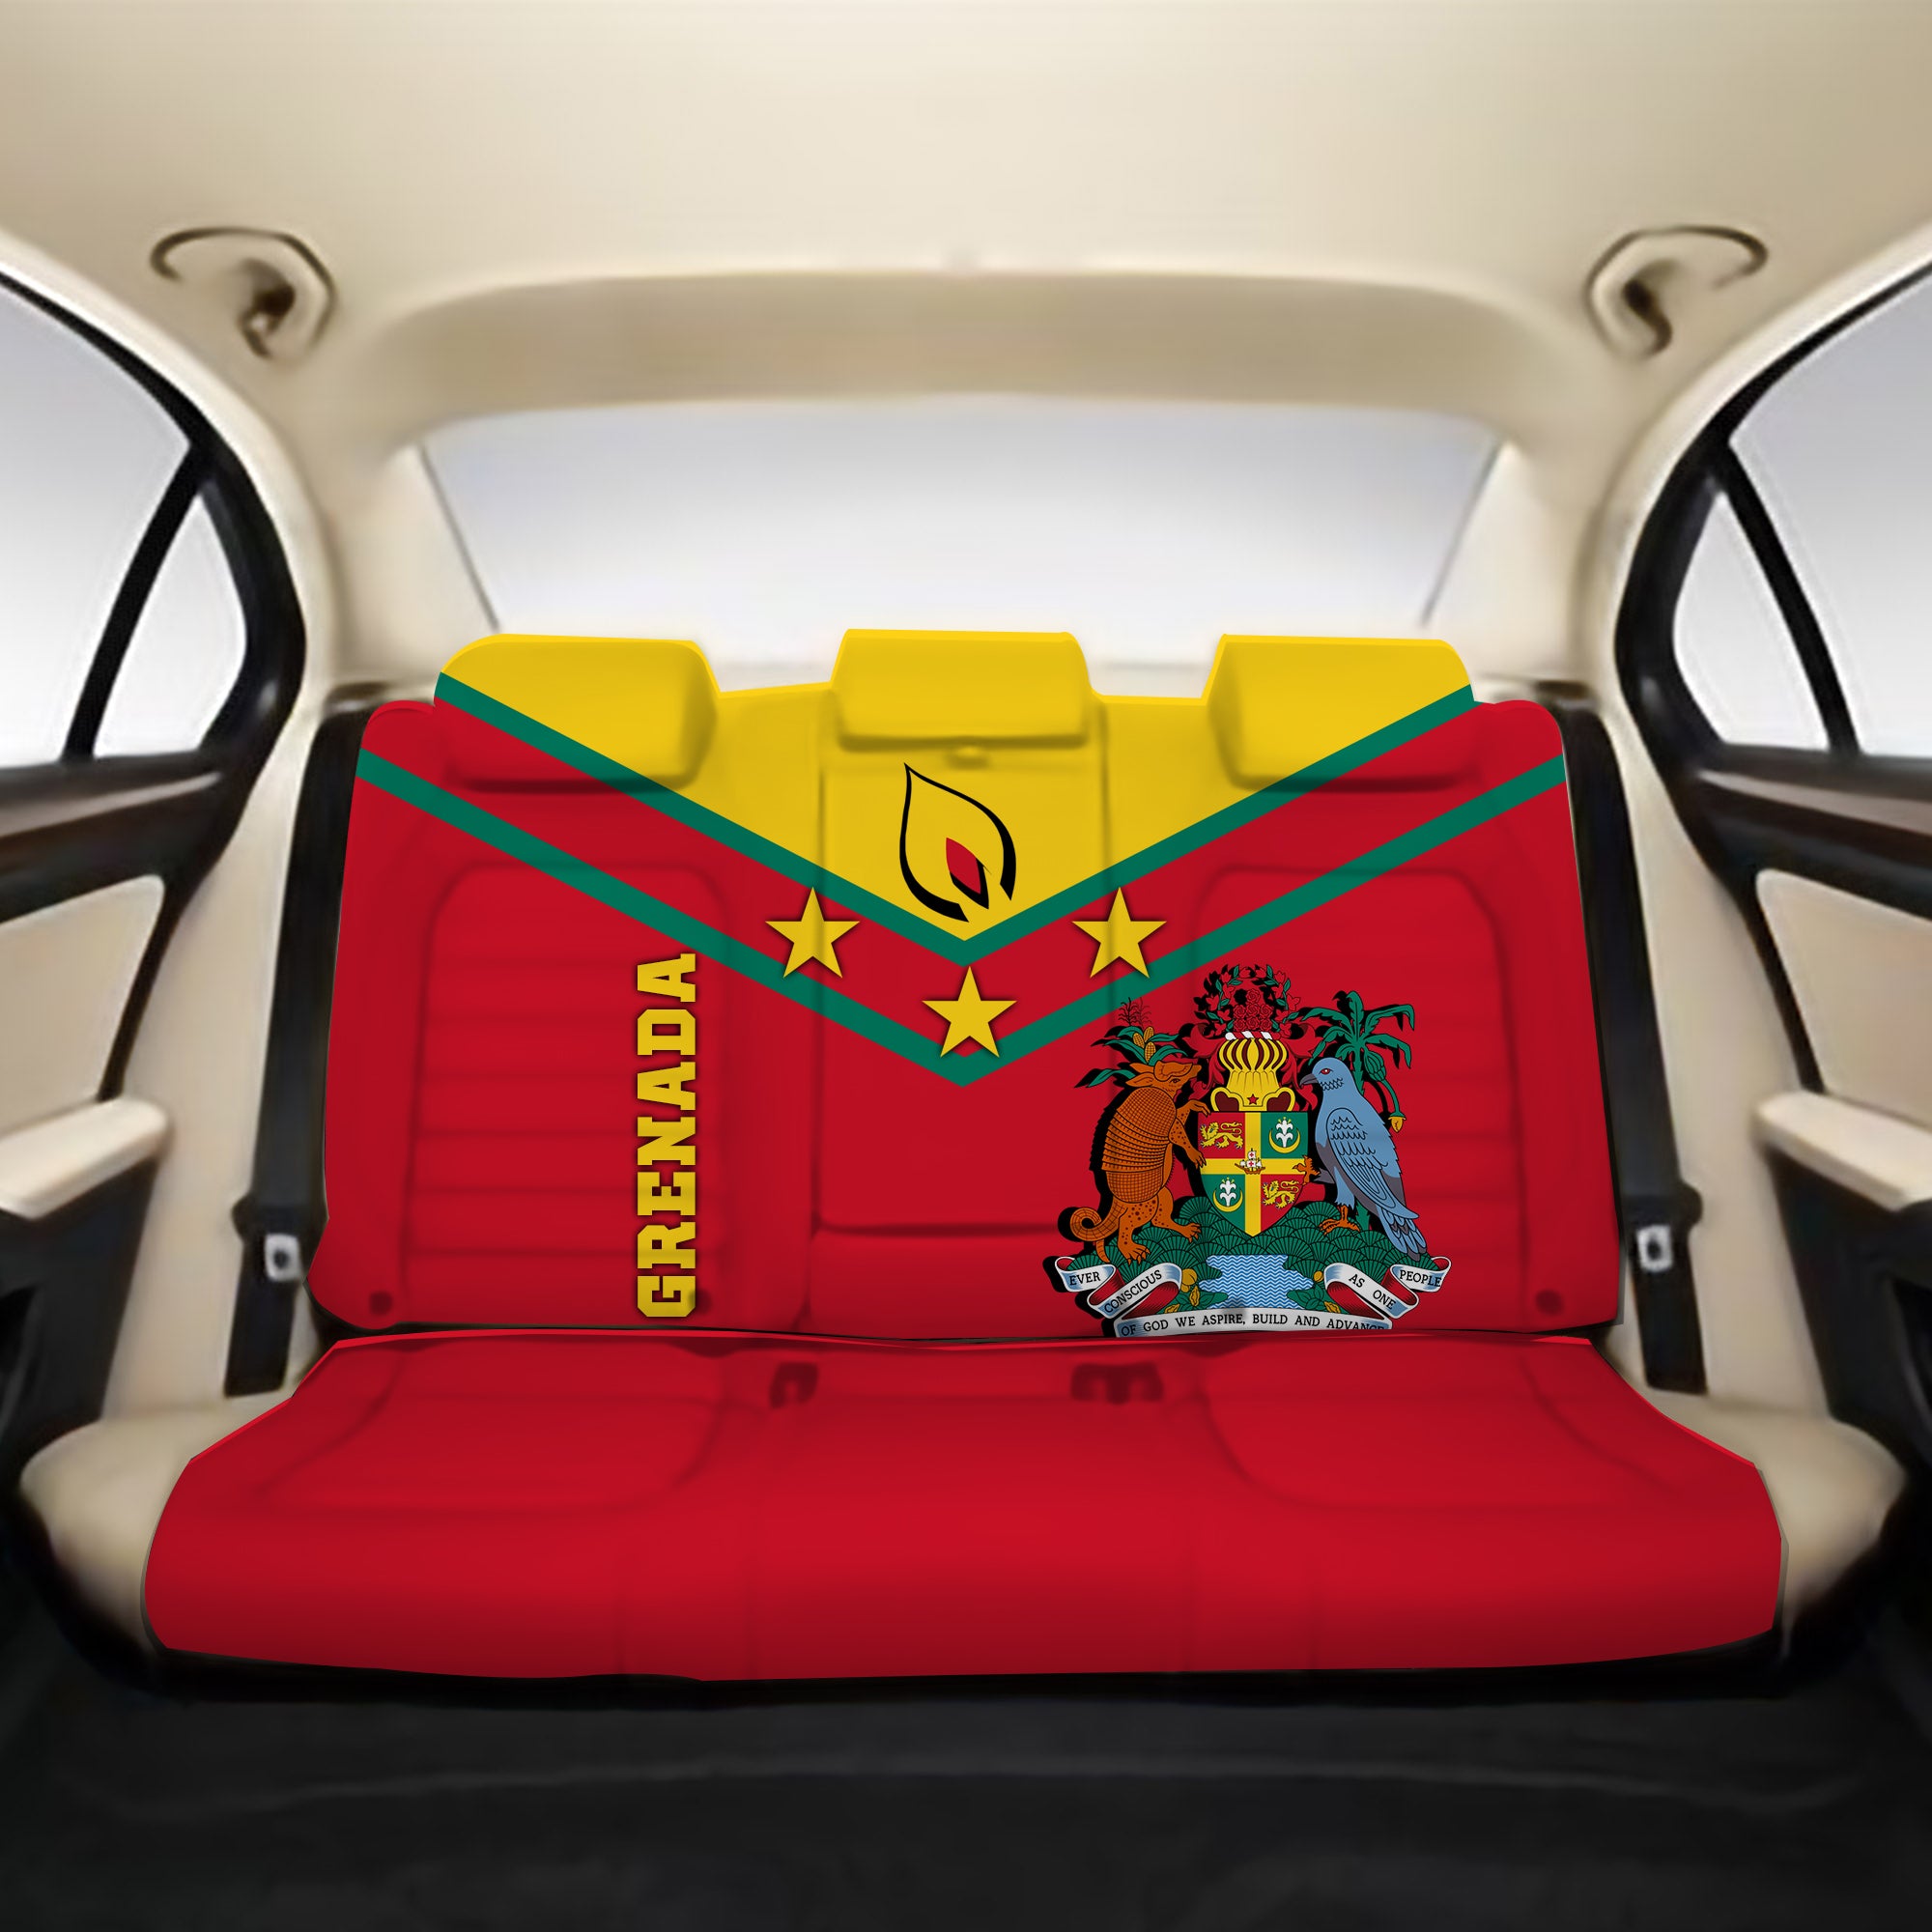 Grenada Back Car Seat Covers - Proud Grenadian - LT12 One Size Red Back Car Seat Covers - Polynesian Pride